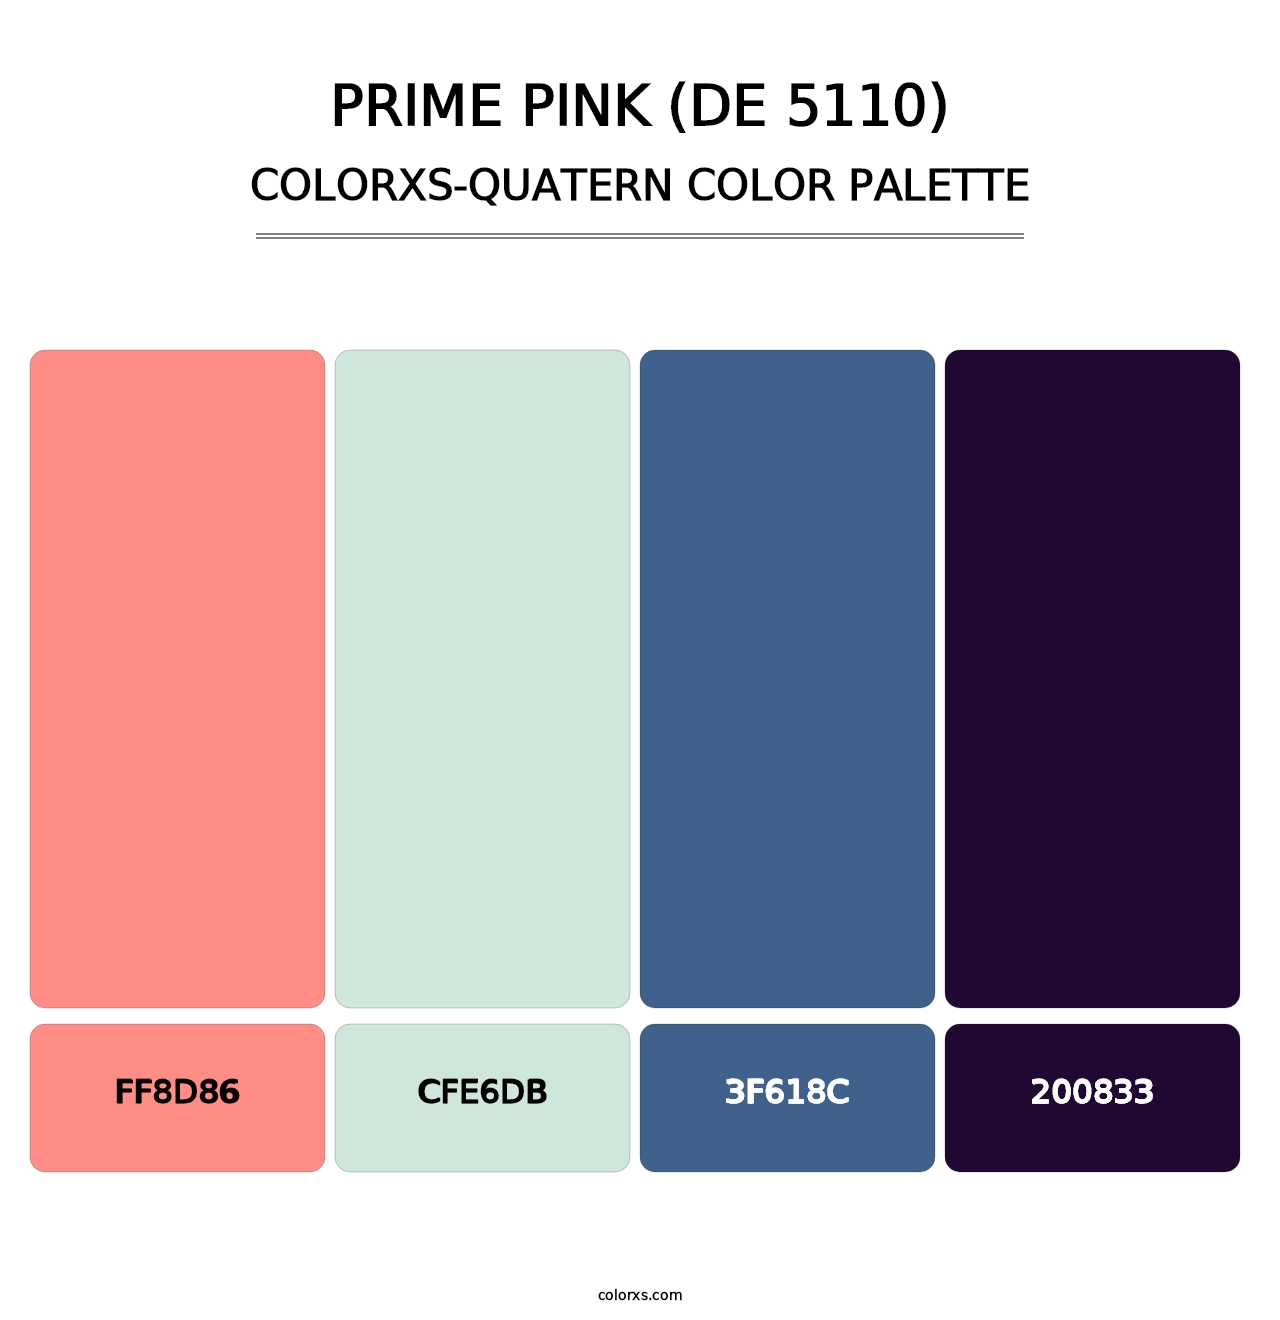 Prime Pink (DE 5110) - Colorxs Quatern Palette